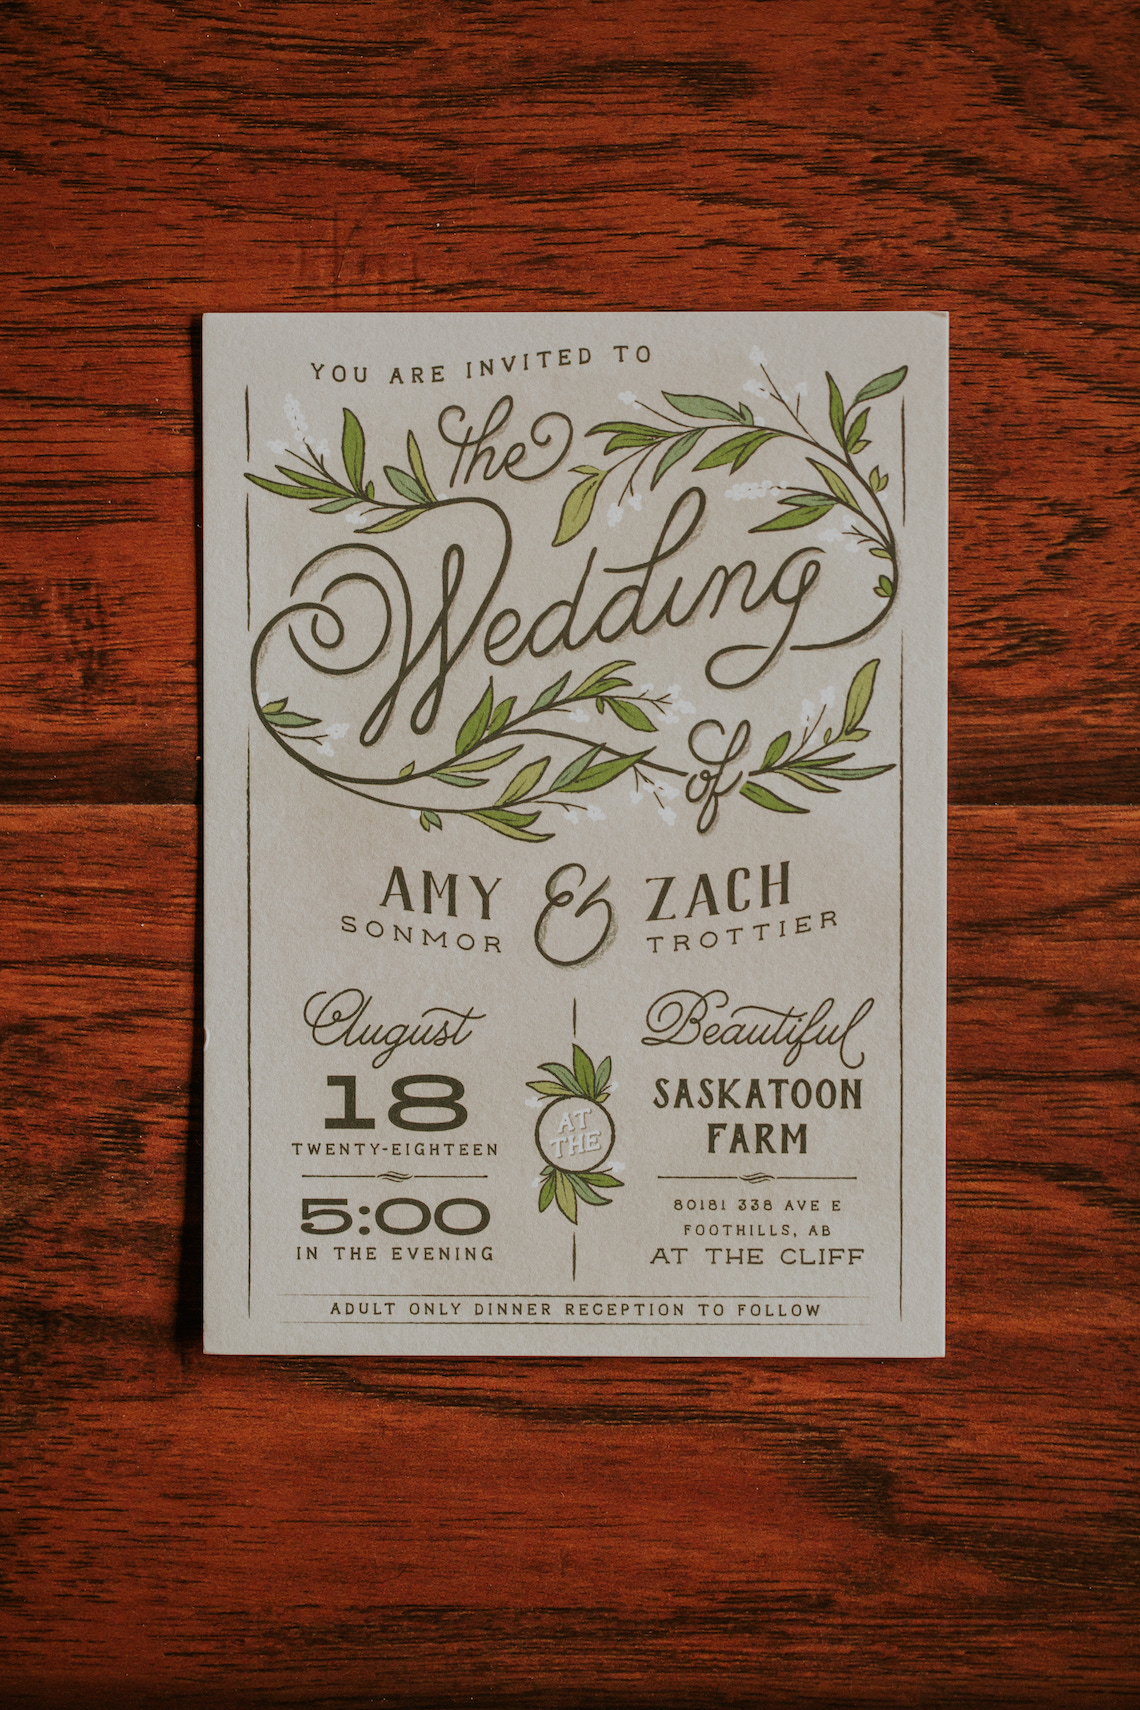 Amy & Zack Wedding